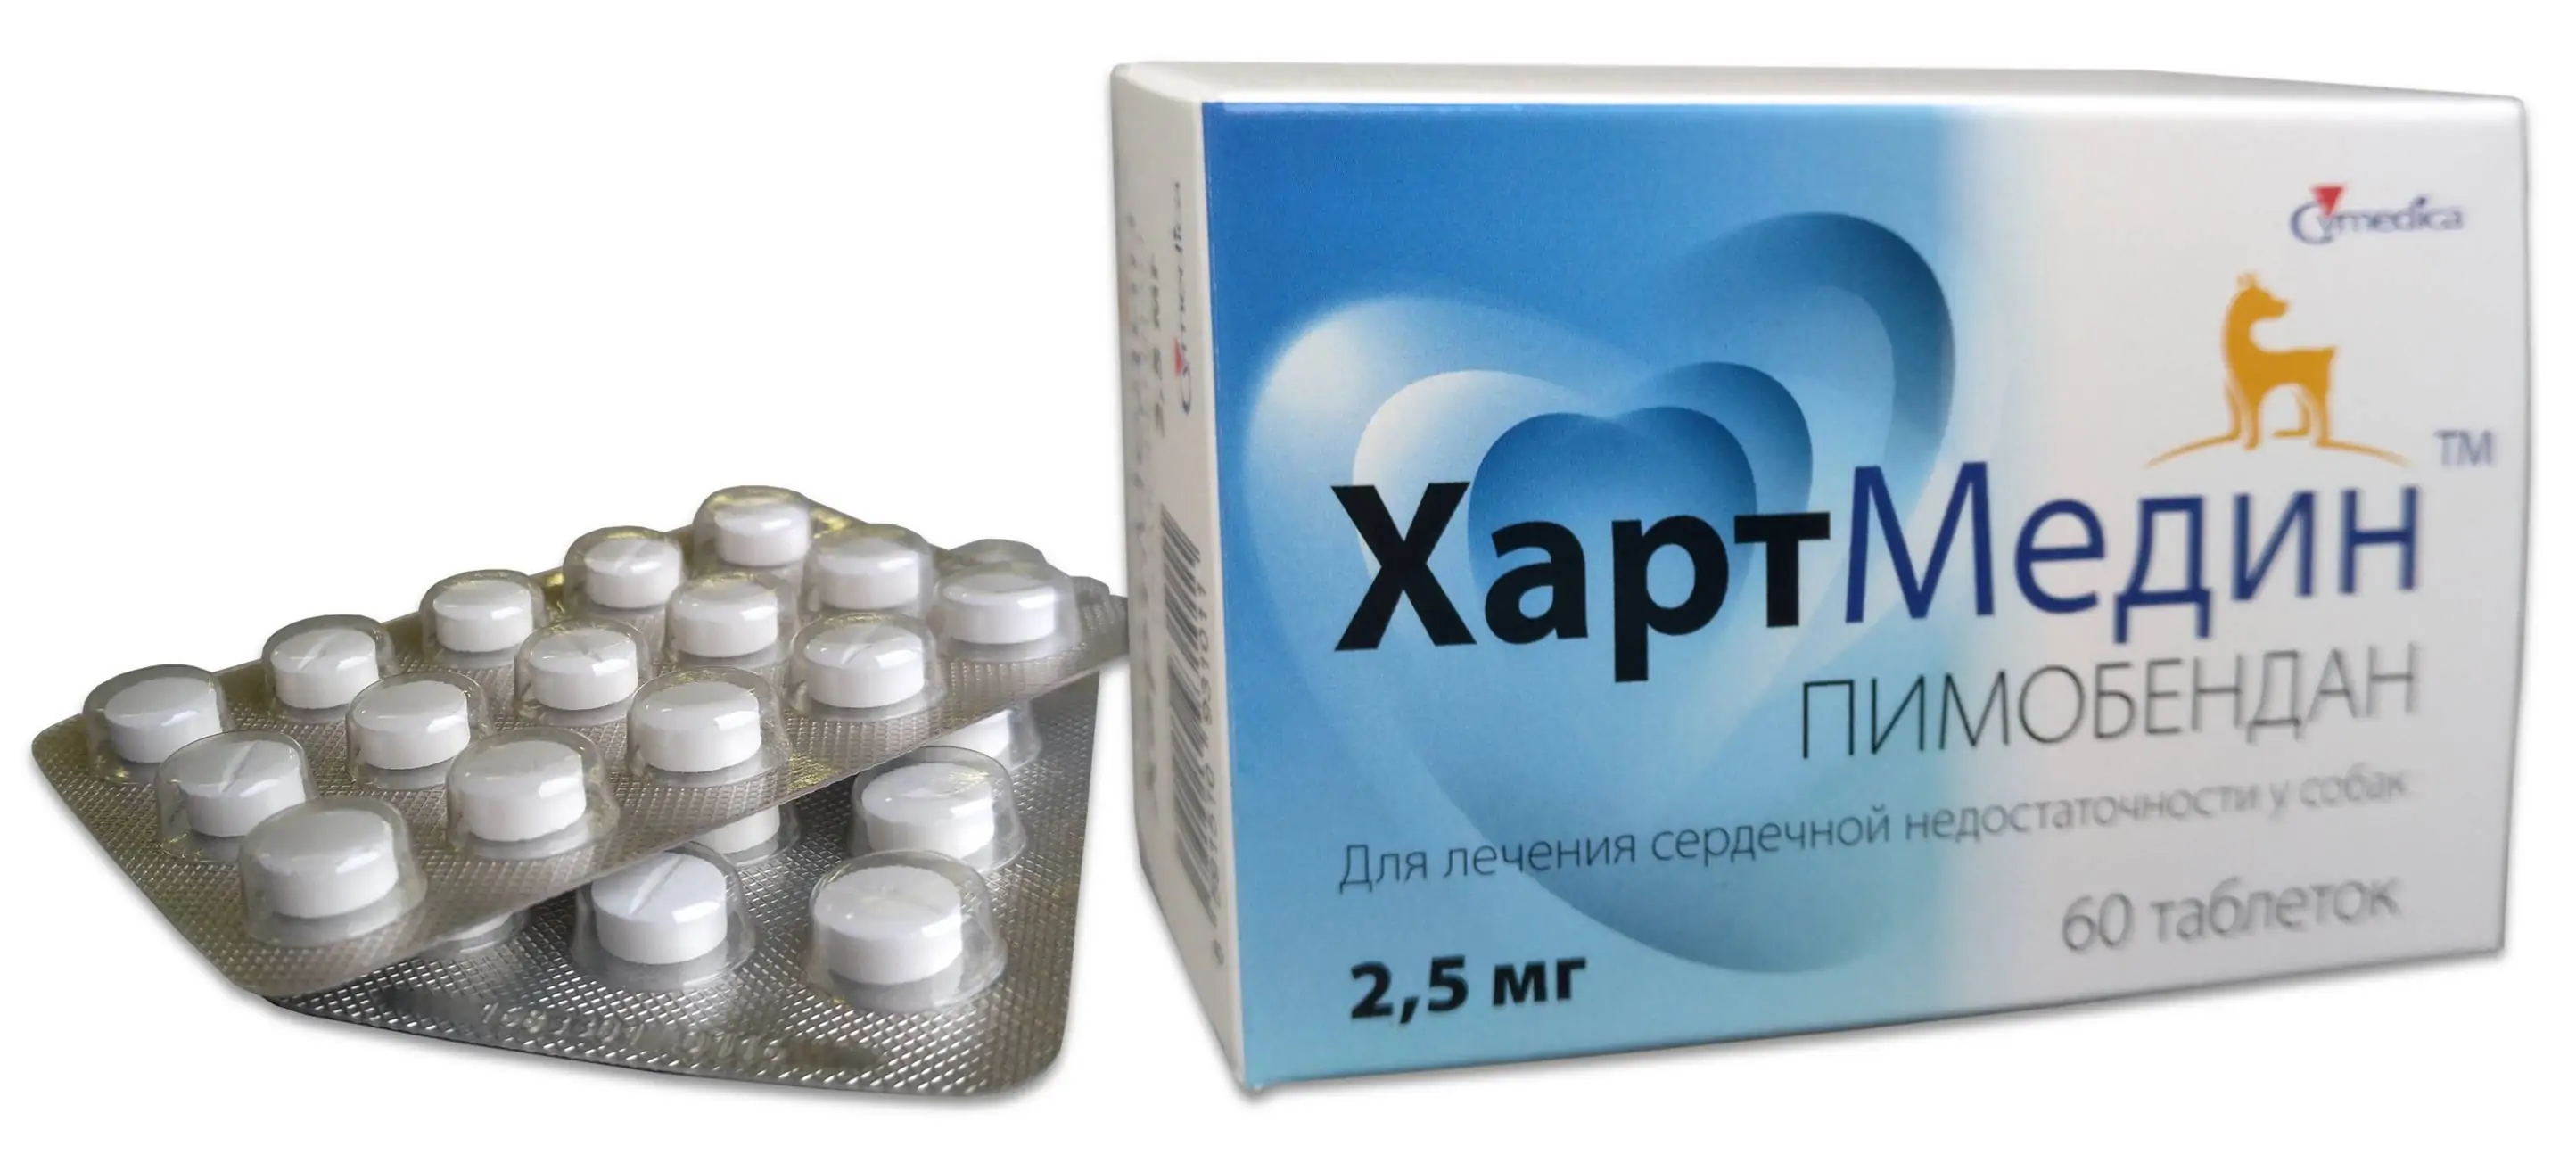 Хартмедин  (HeartMedin)  2,5 мг. уп. 60 таблеток петдог